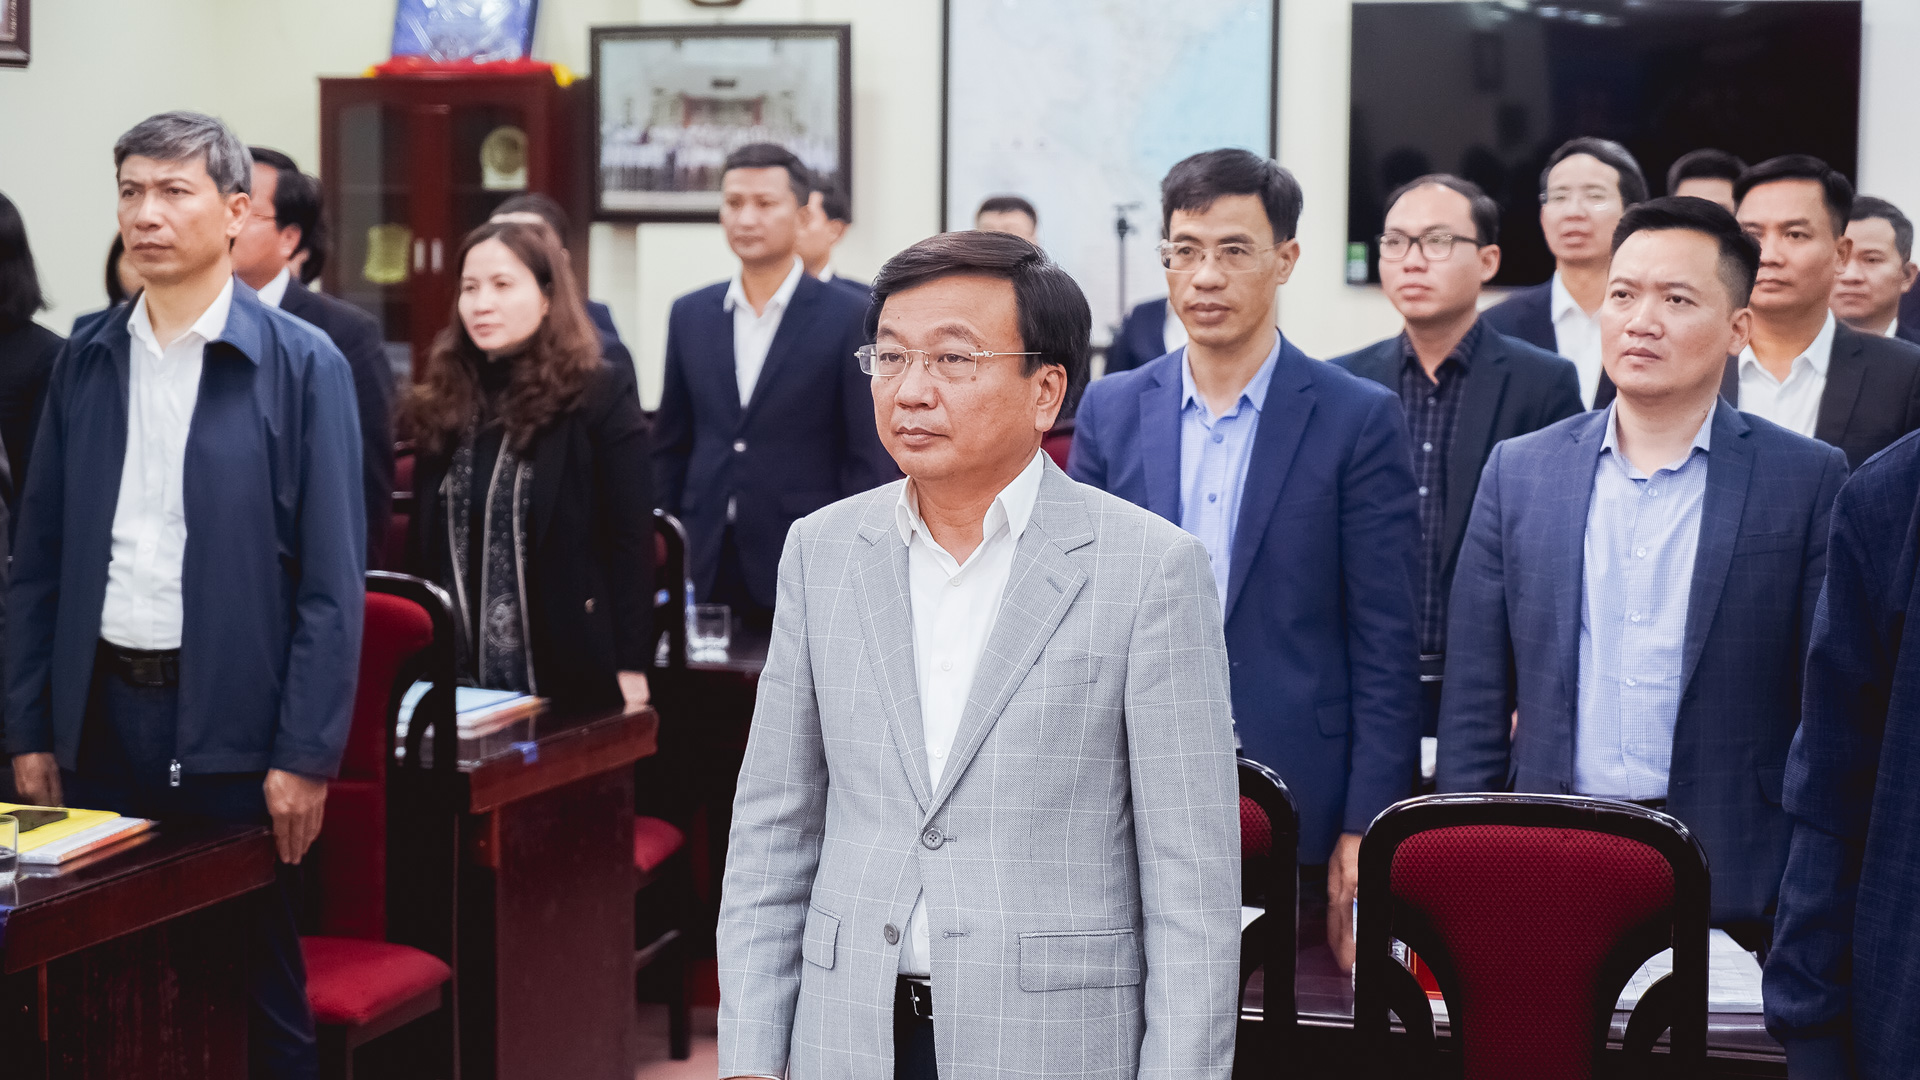 Thứ trưởng Nguyễn Danh Huy: "Tôi tin tưởng trên những gương mặt rạng ngời ở Tạp chí GTVT"- Ảnh 2.